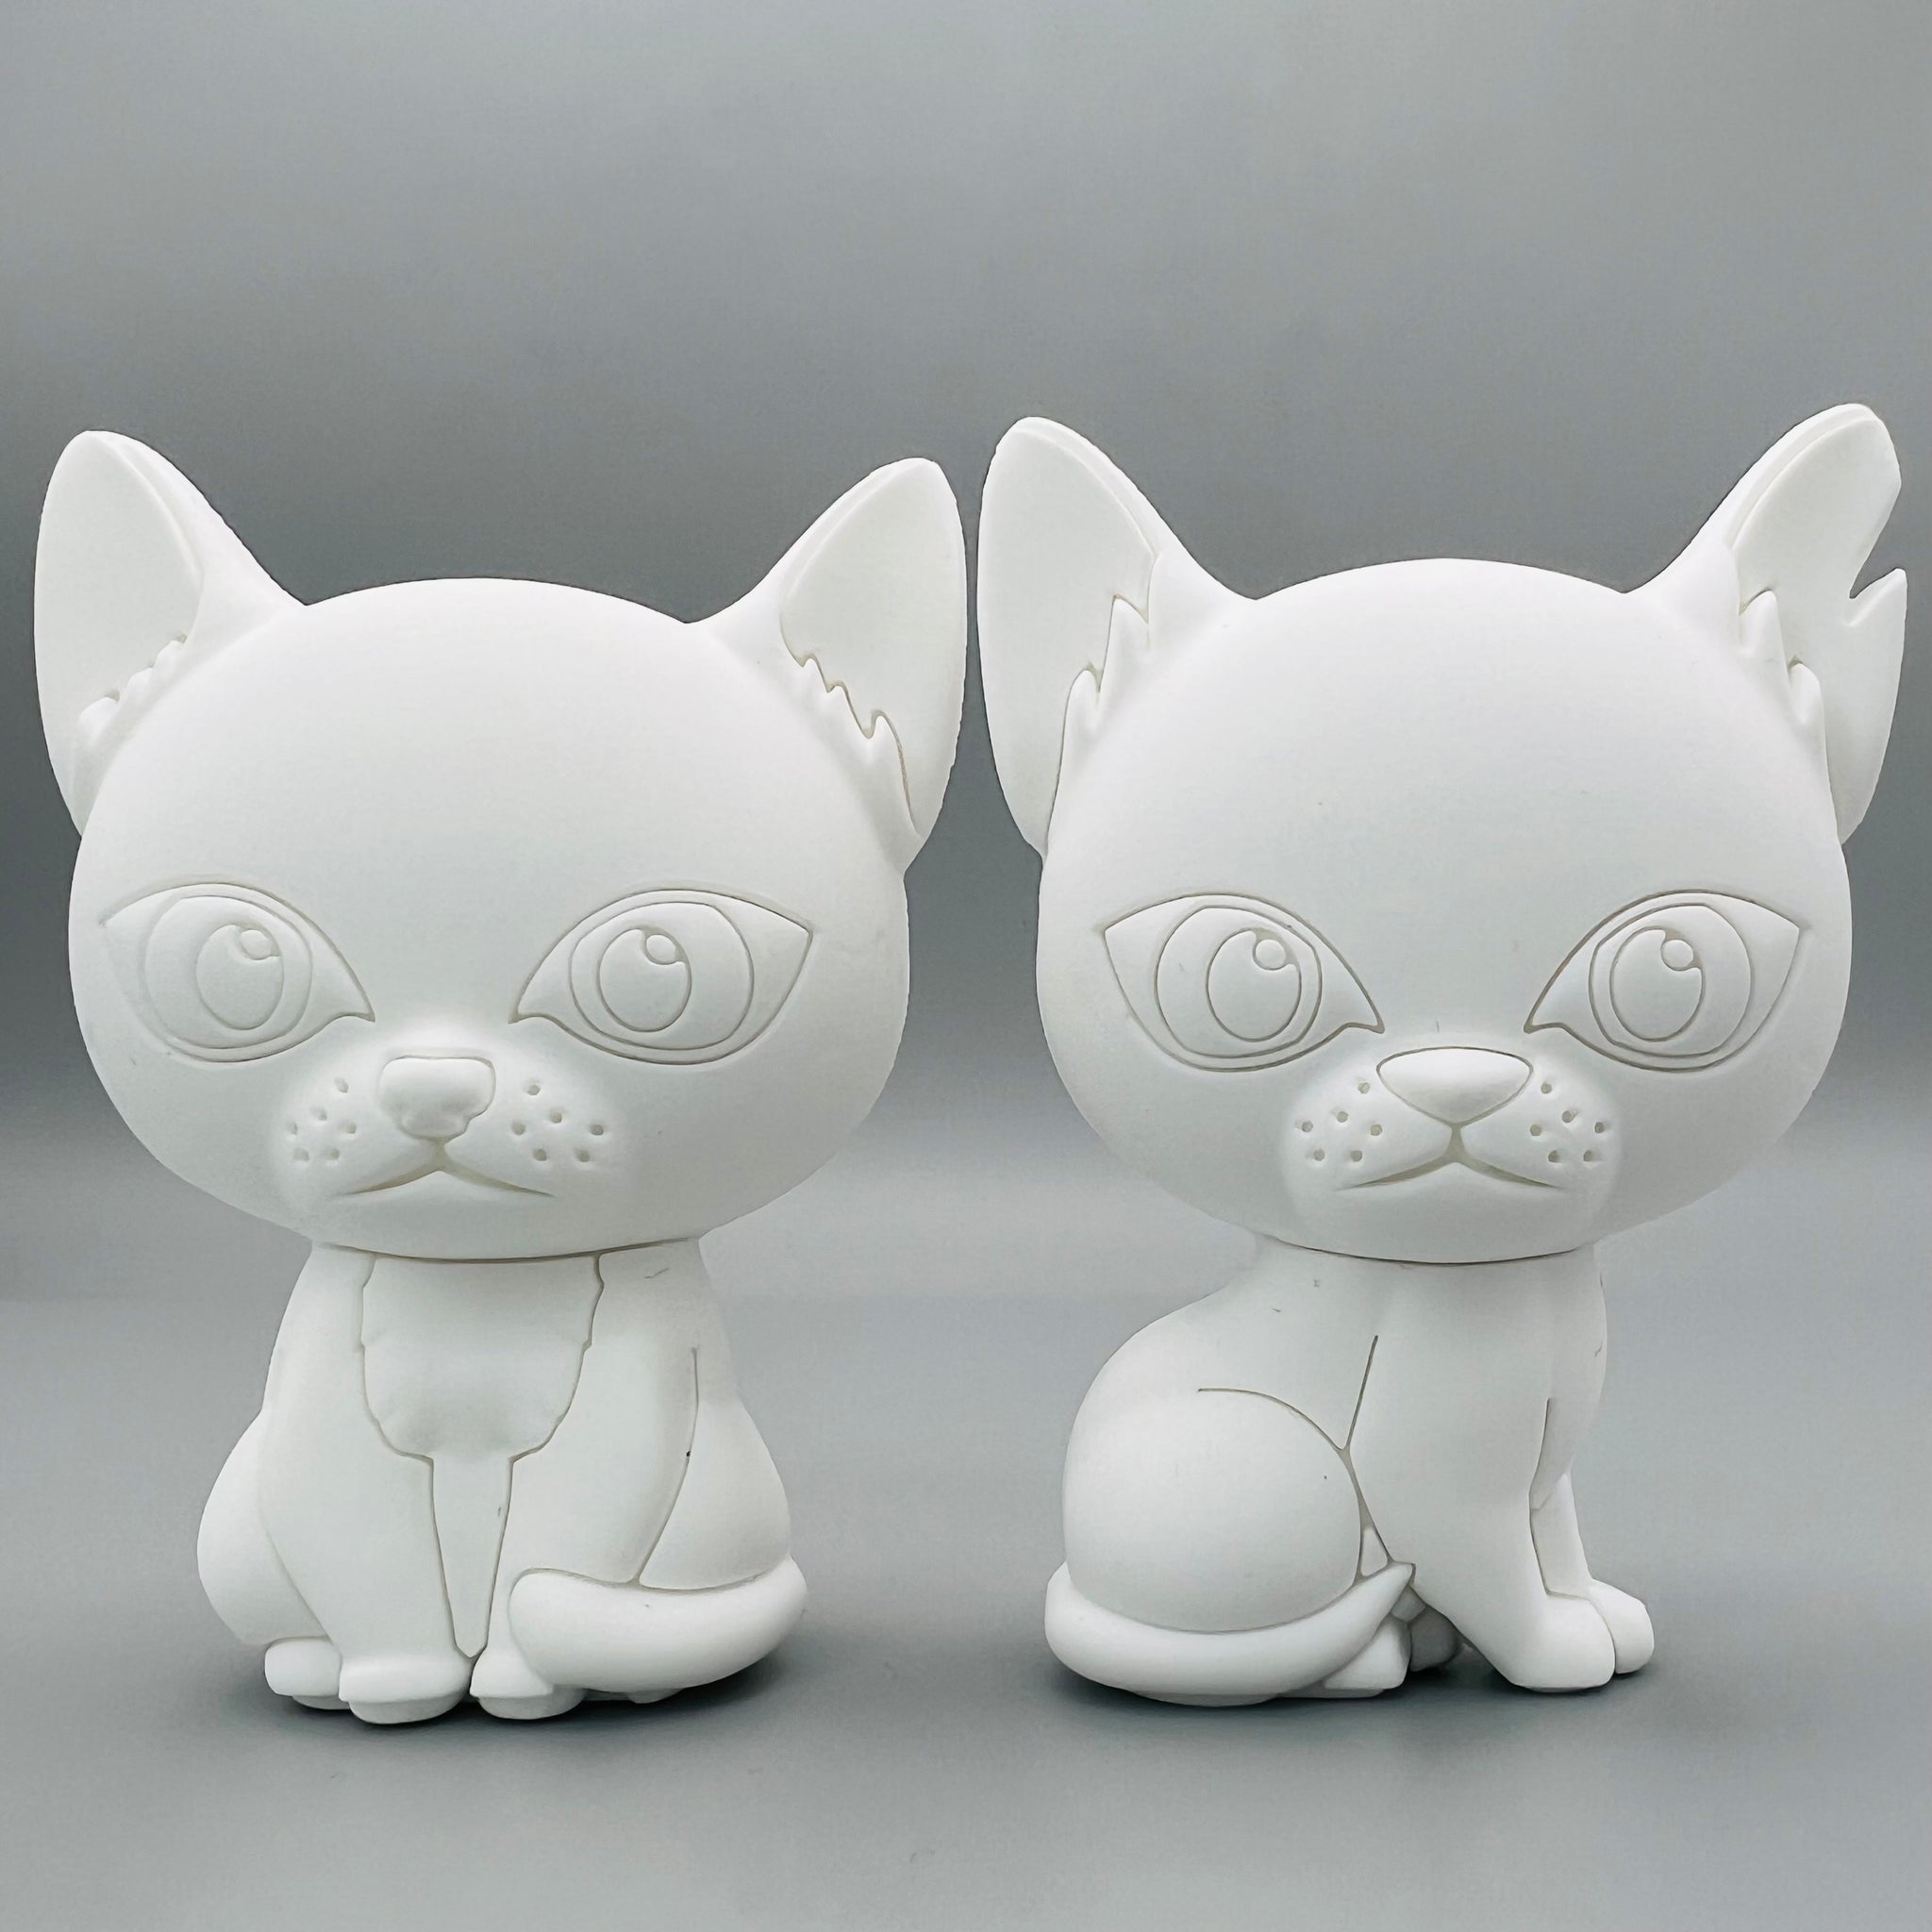 New Feature: Warrior Cats Mini Maker!